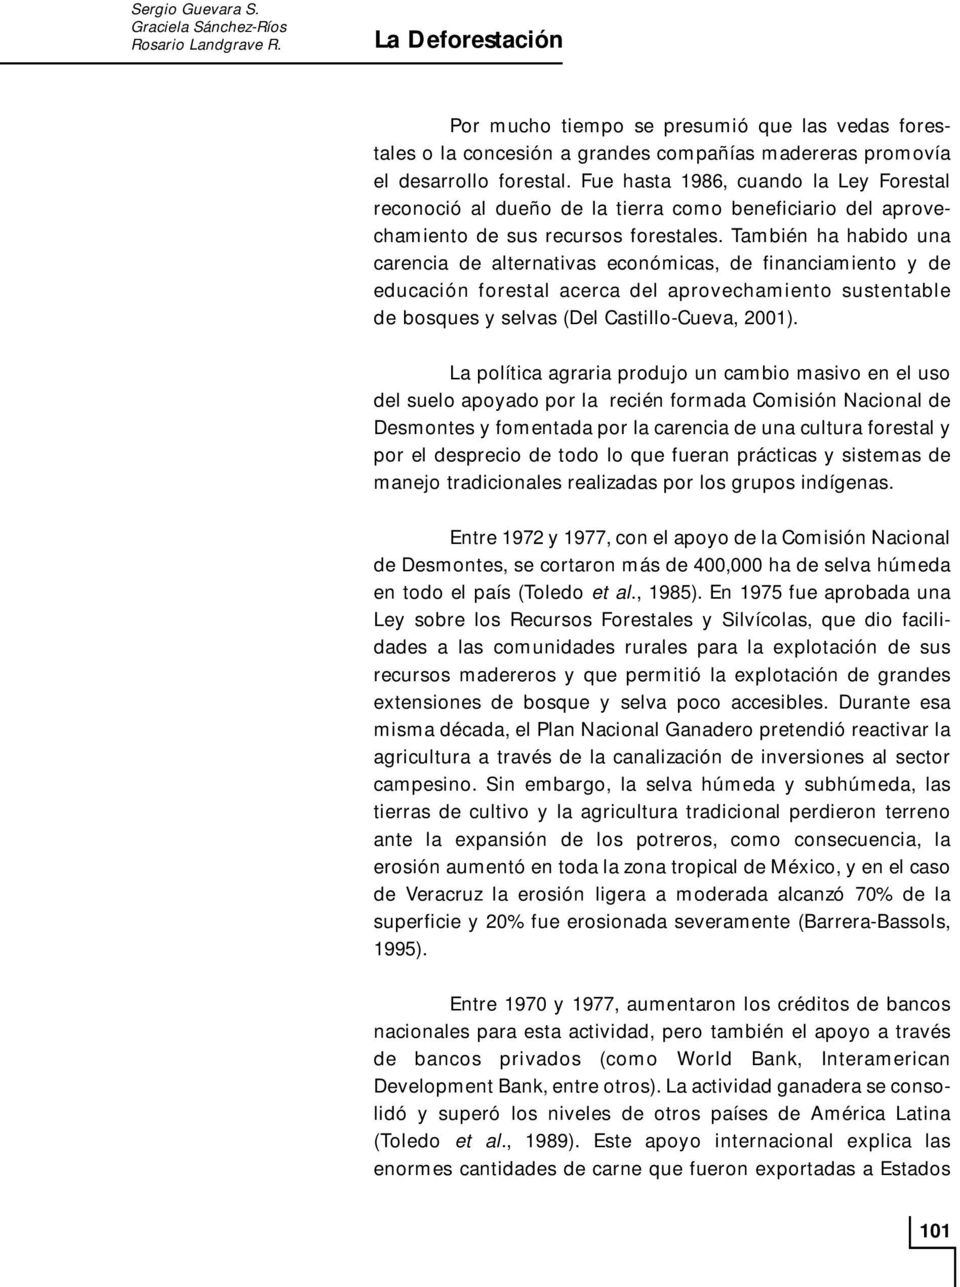 También ha habido una carencia de alternativas económicas, de financiamiento y de educación forestal acerca del aprovechamiento sustentable de bosques y selvas (Del Castillo-Cueva, 2001).